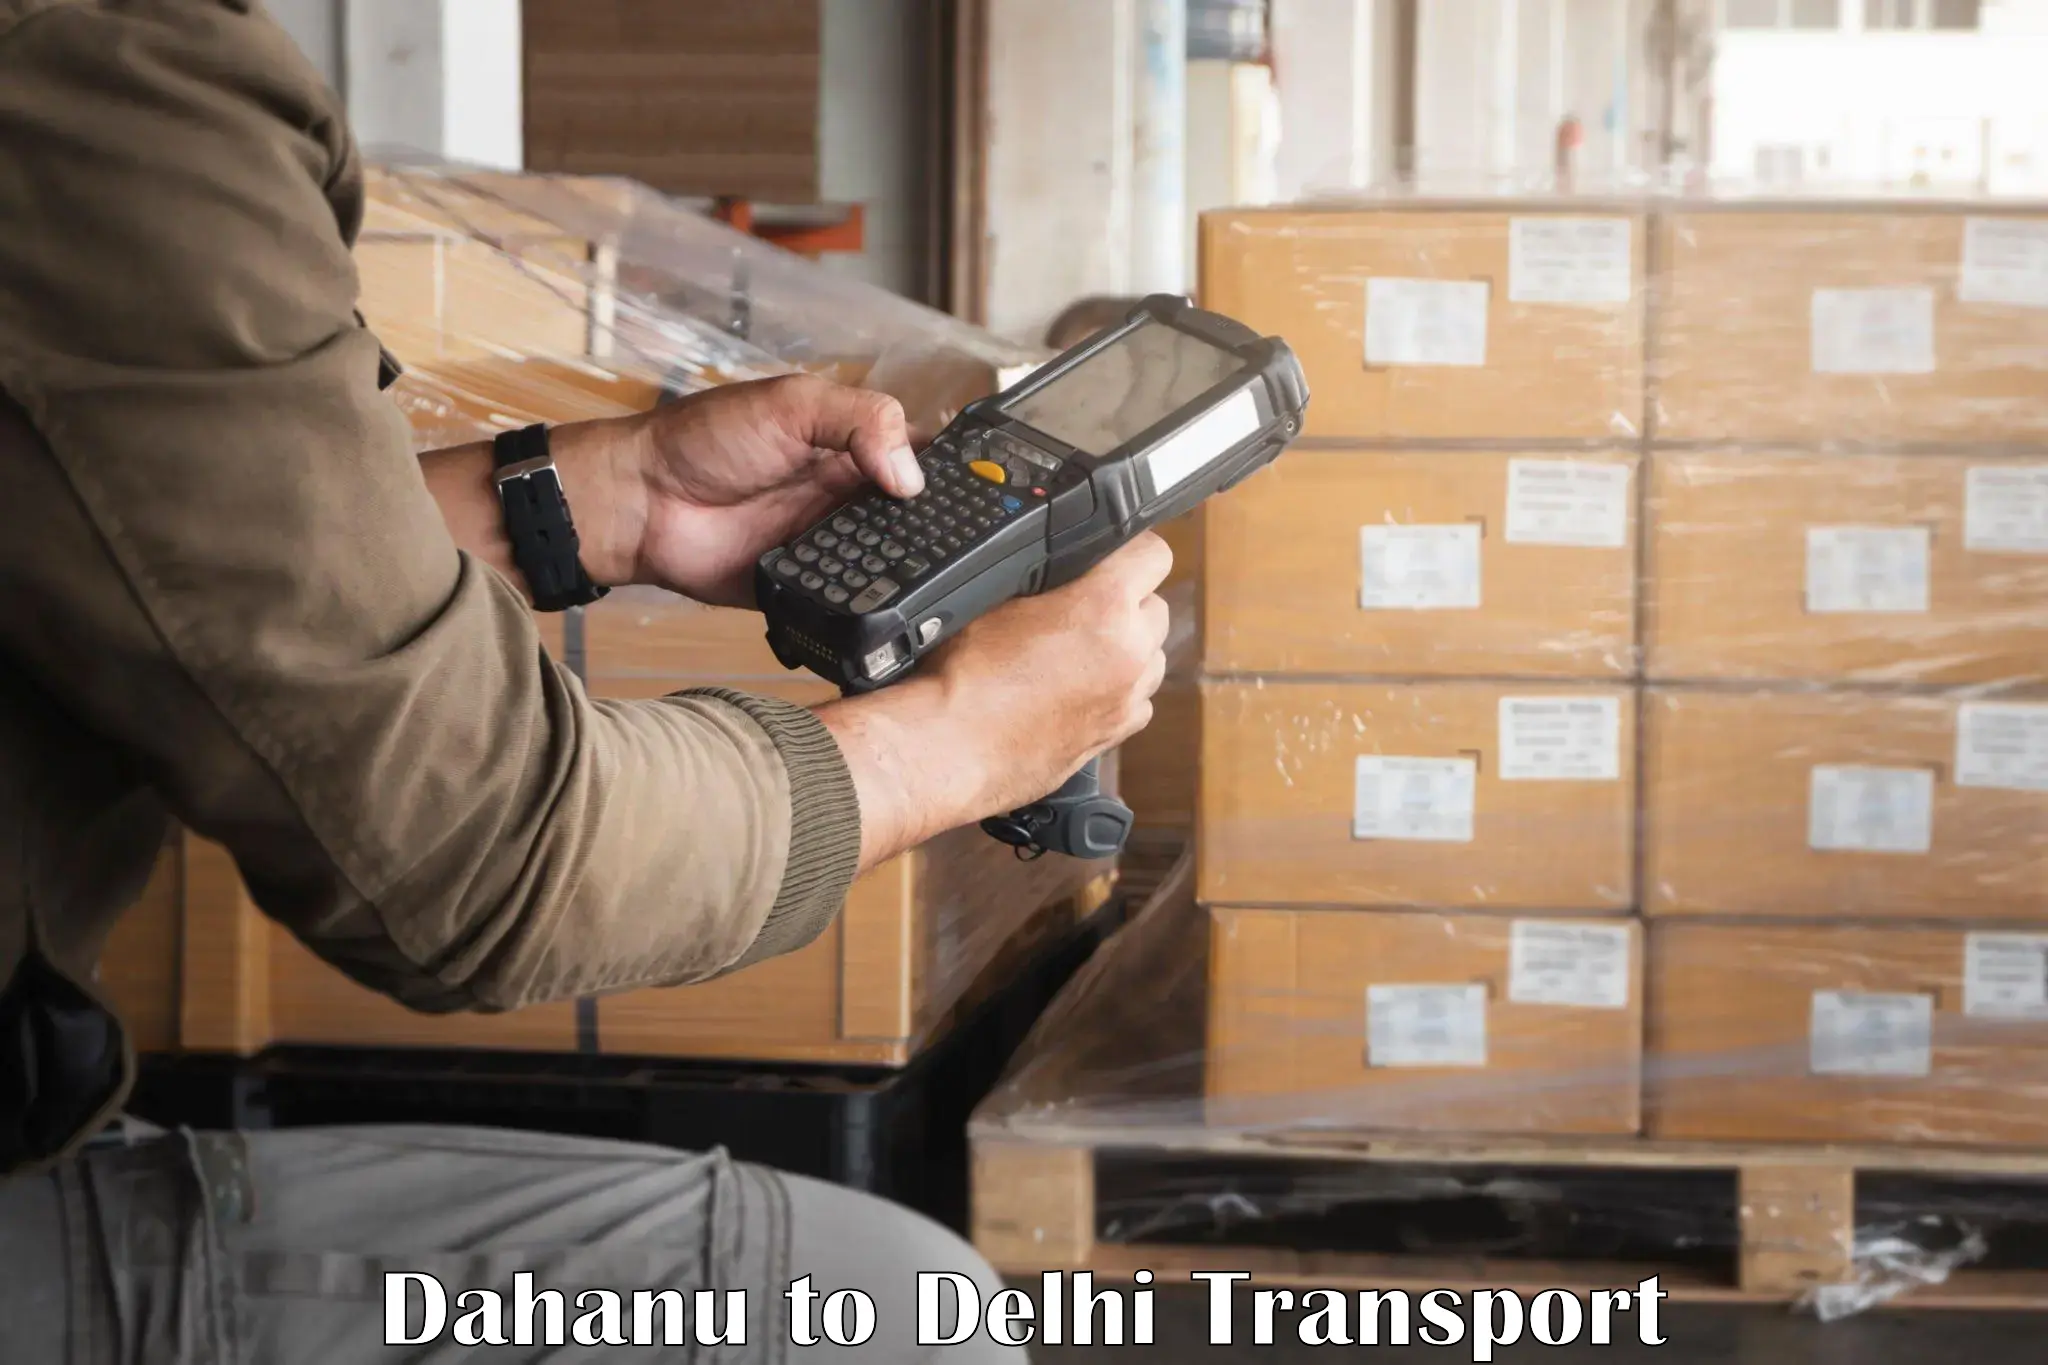 Domestic transport services Dahanu to IIT Delhi